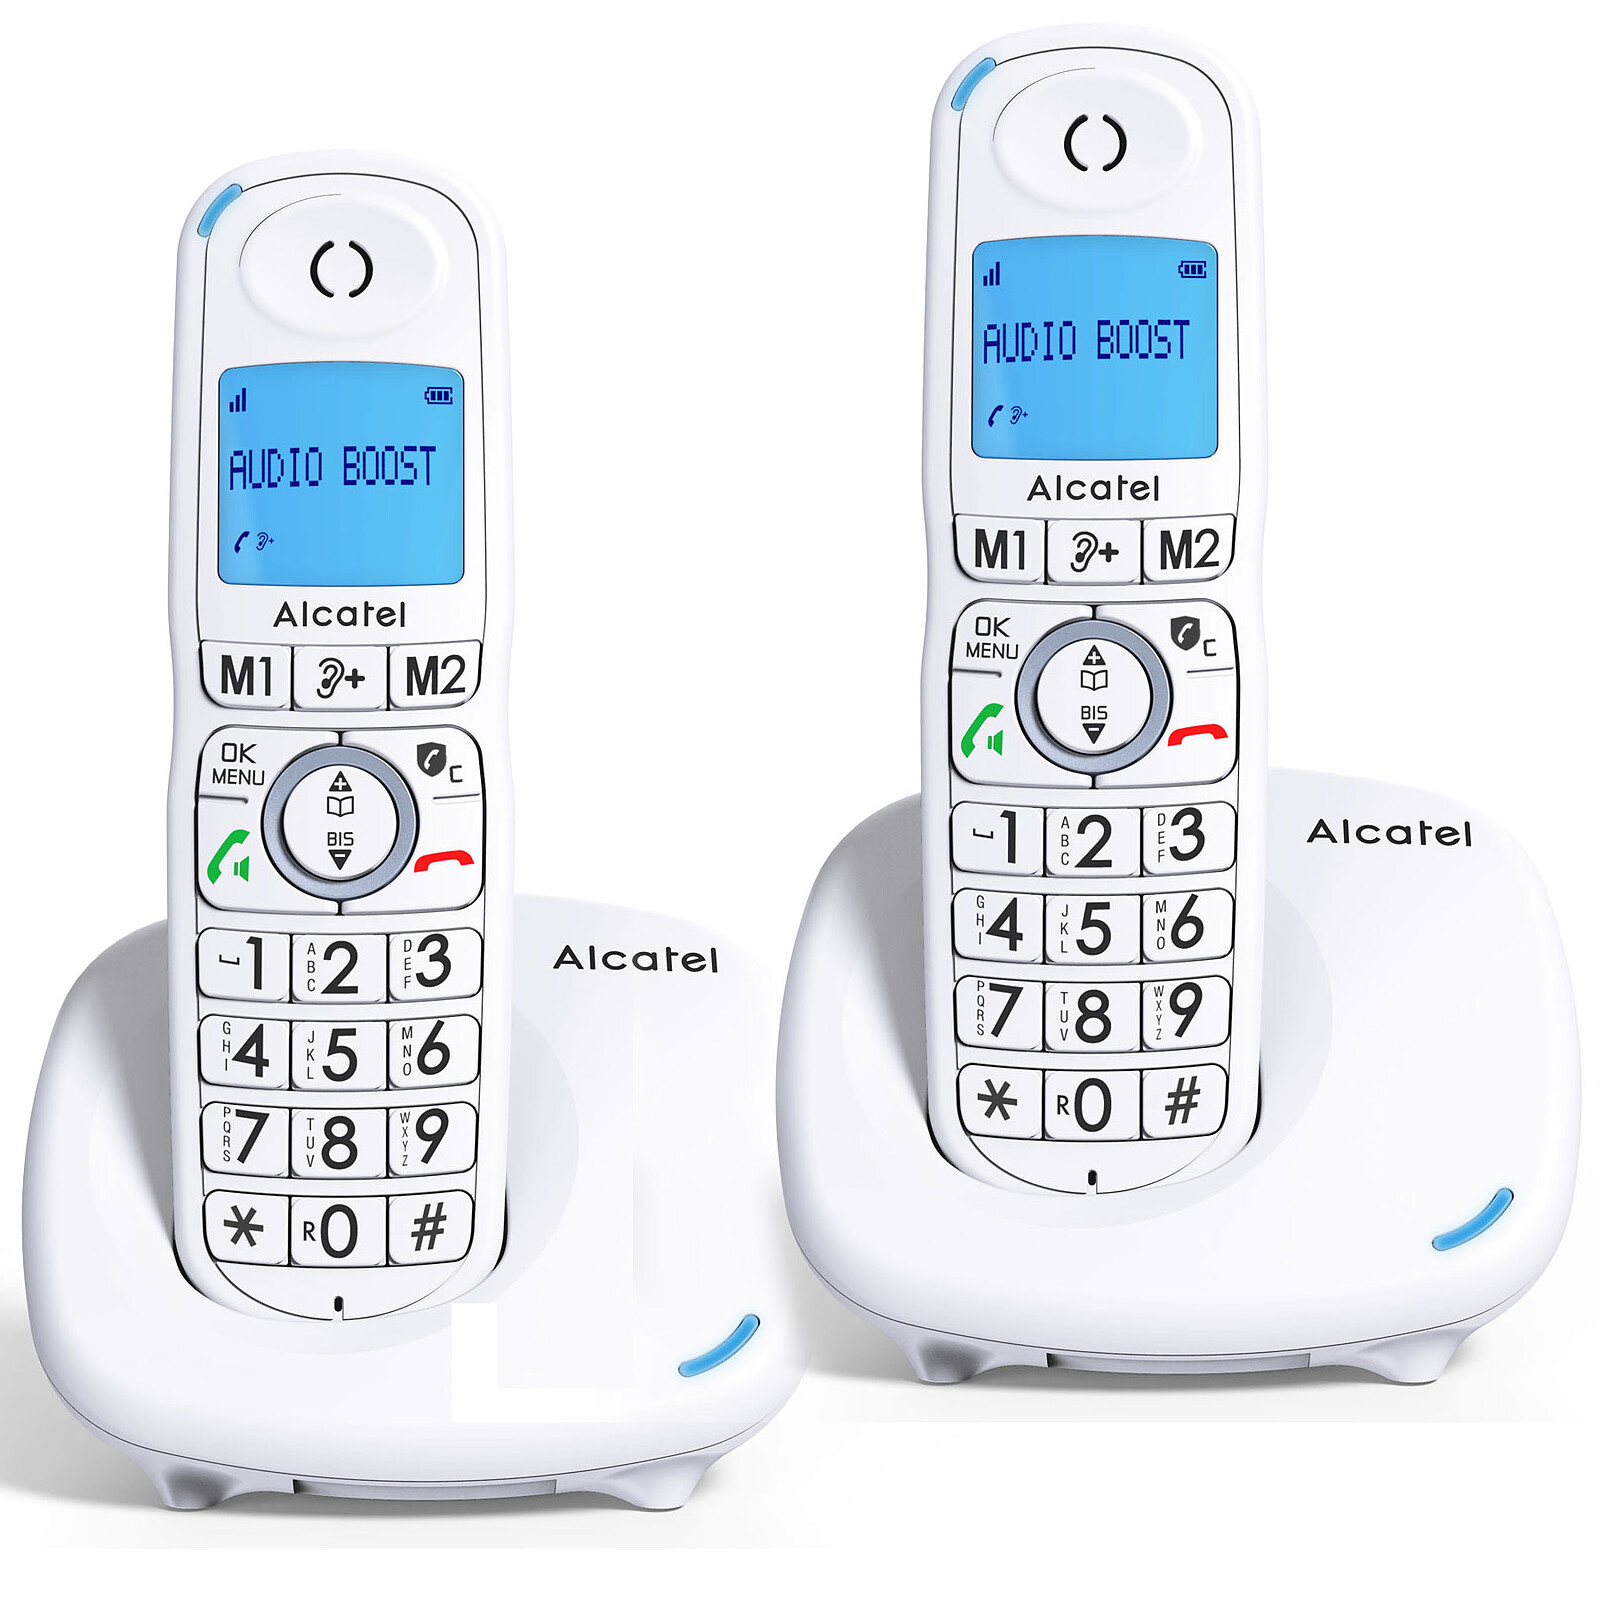 Téléphone fixe sans fil Alcatel F860 Duo Noir - Téléphone sans fil